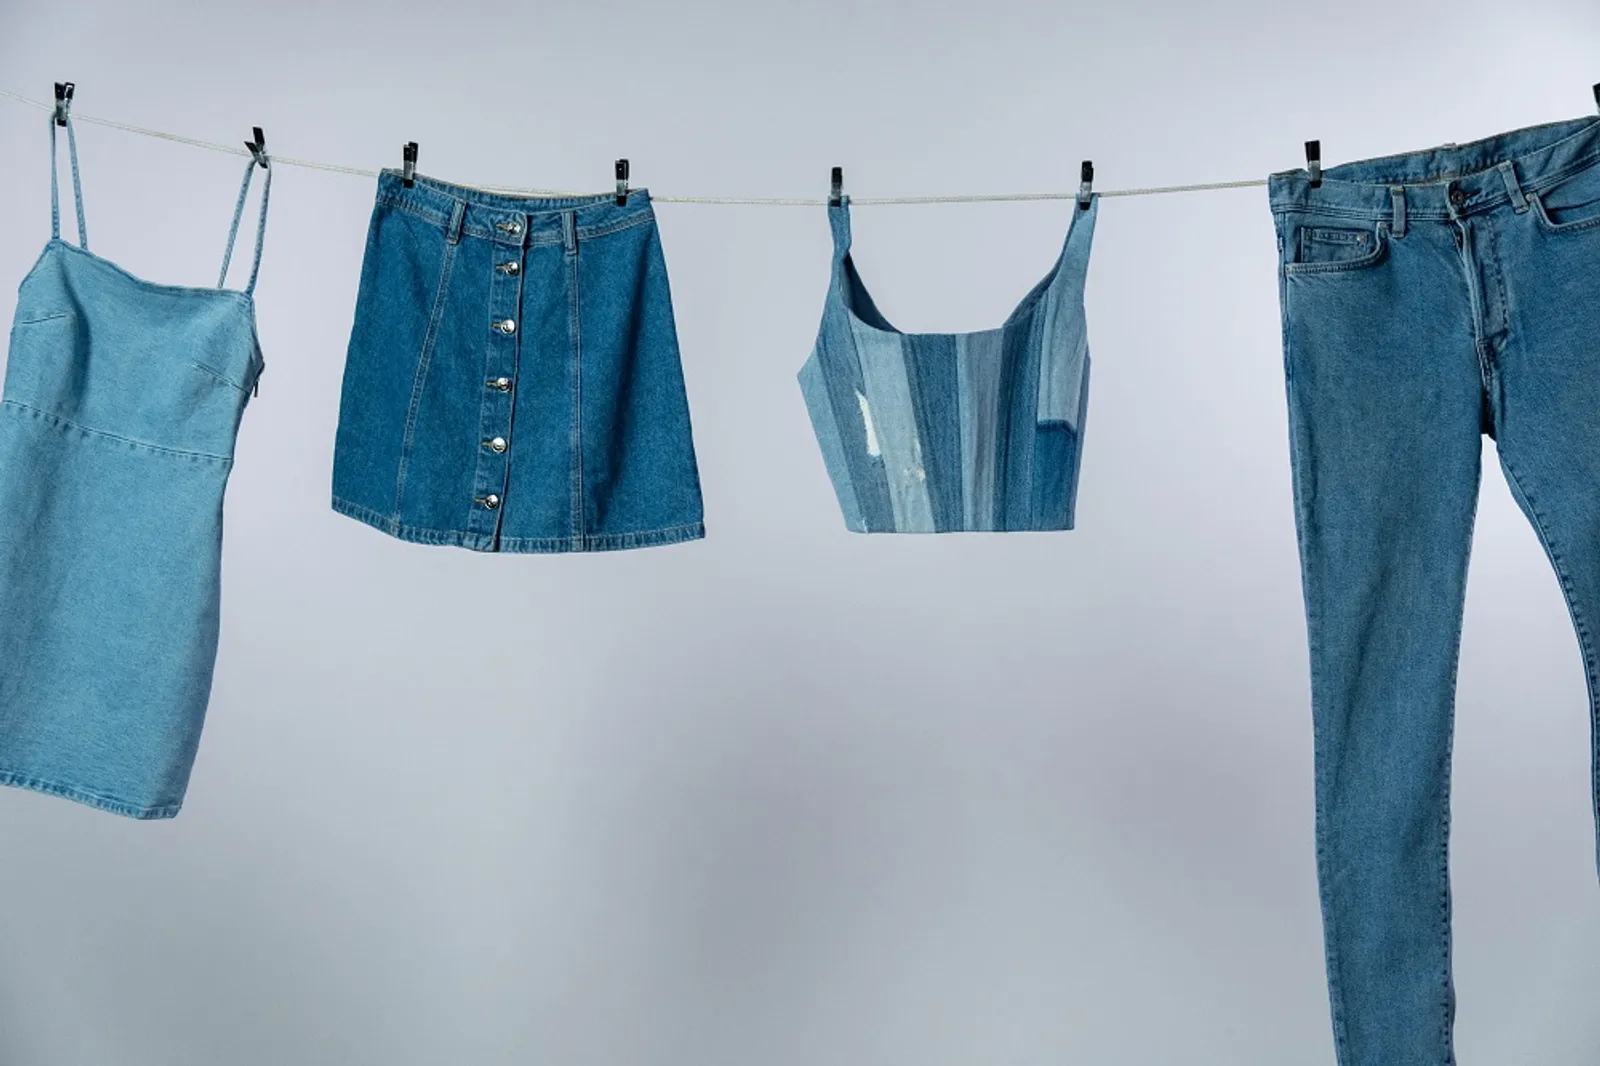 Pro Kontra Dibalik Seberapa Sering Kita Harus Cuci Jeans? Ini Idealnya